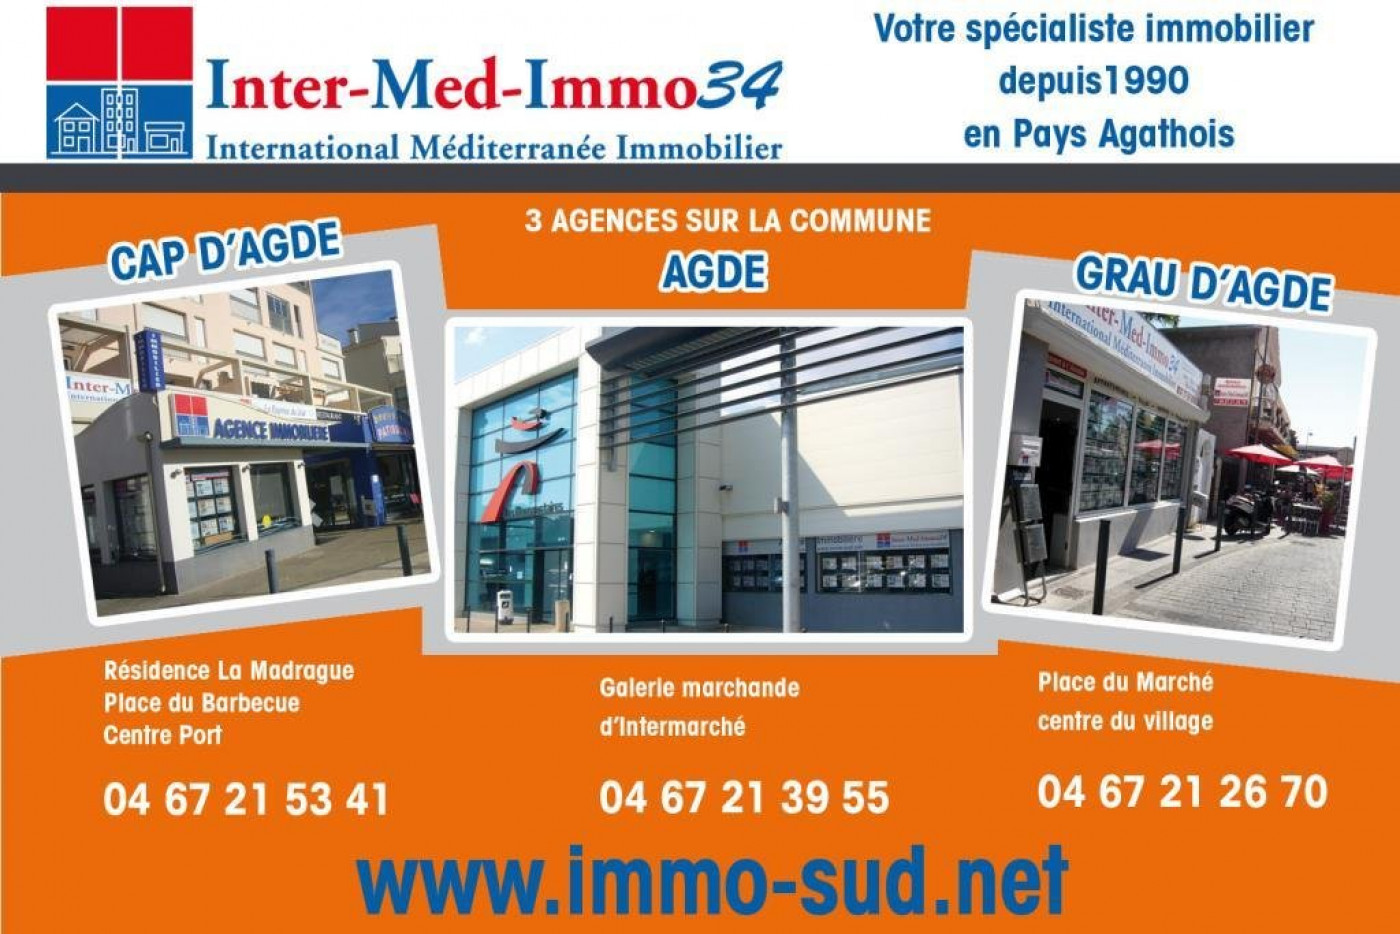 A vendre  Agde | Réf 3458344210 - Inter-med-immo34 - prestige